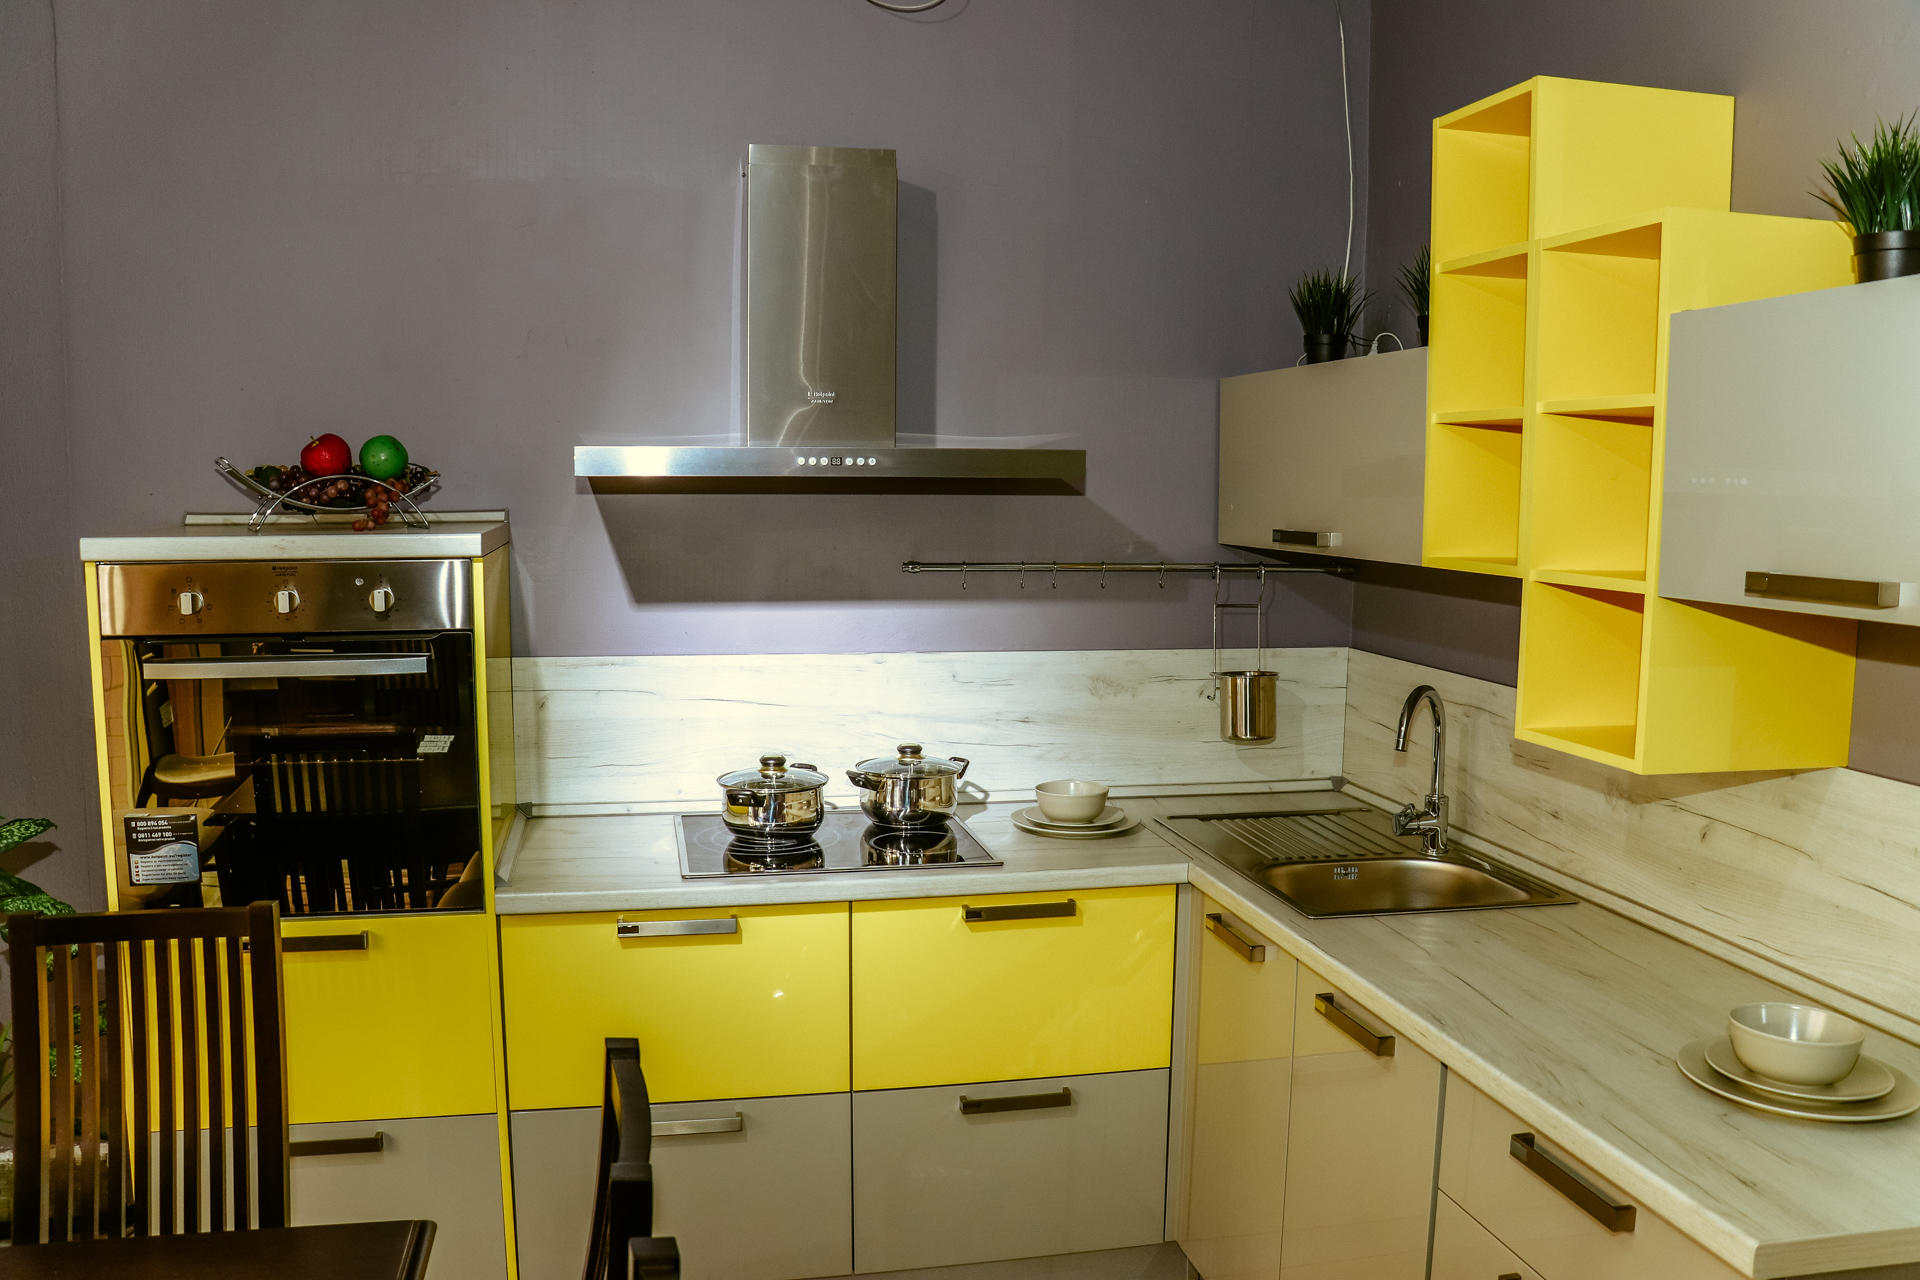 Студии кухонь «Мария» и «Едим дома» в Чите сделают скидки и подарят бытовую технику в марте